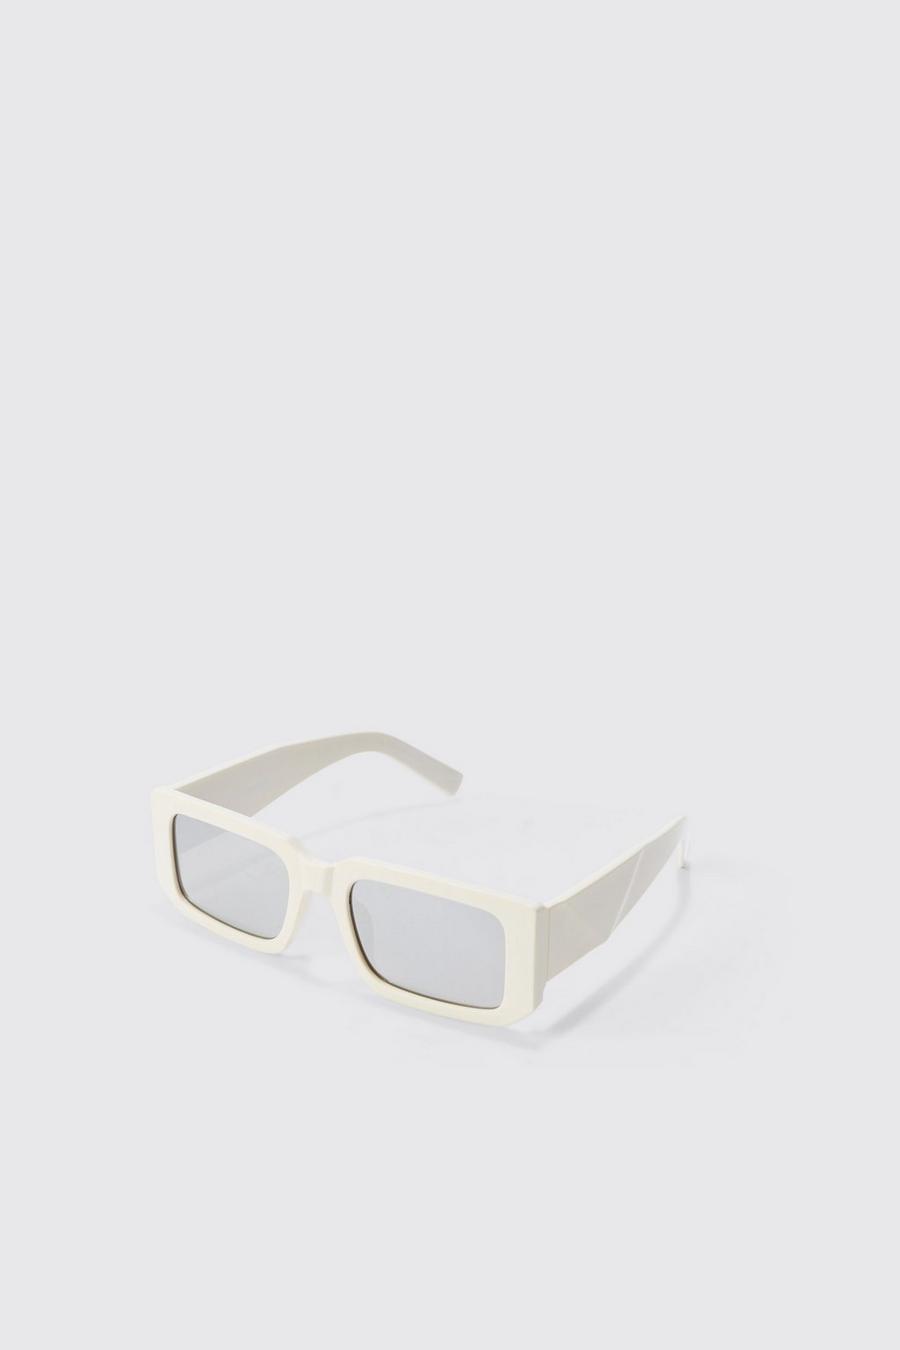 Chunky Rectangular Mirror Lens Sunglasses In White